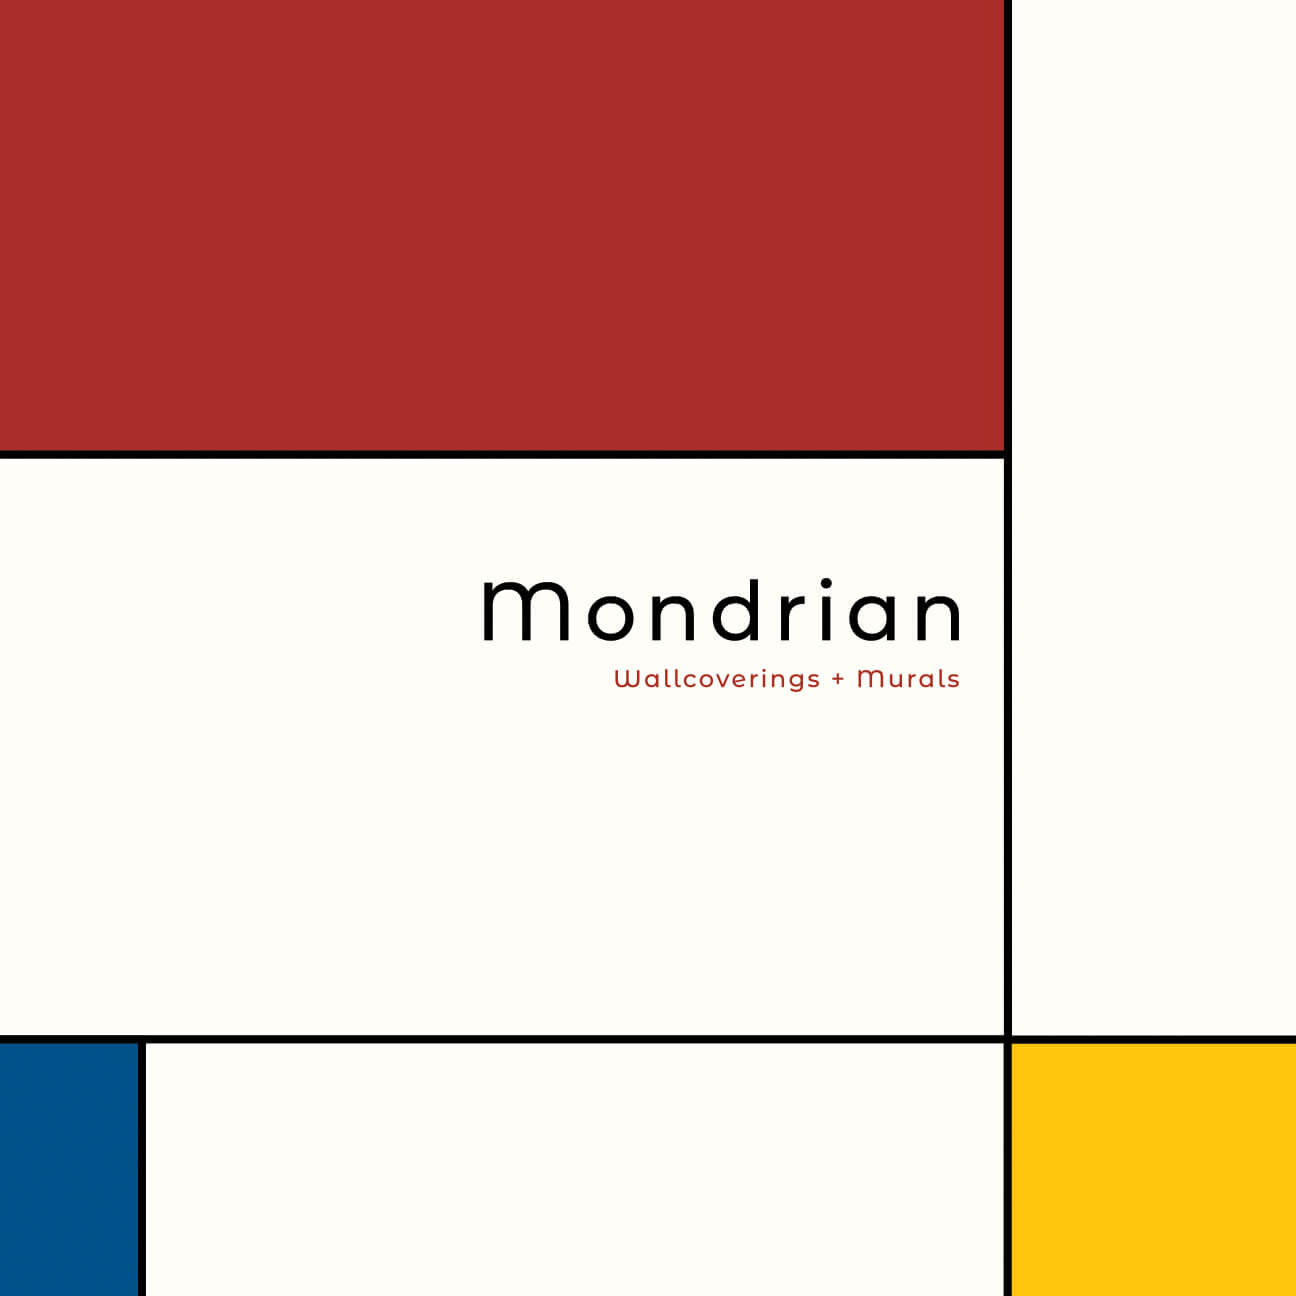 Seabrook Mondrian Deco Wallpaper - Latte Graphite